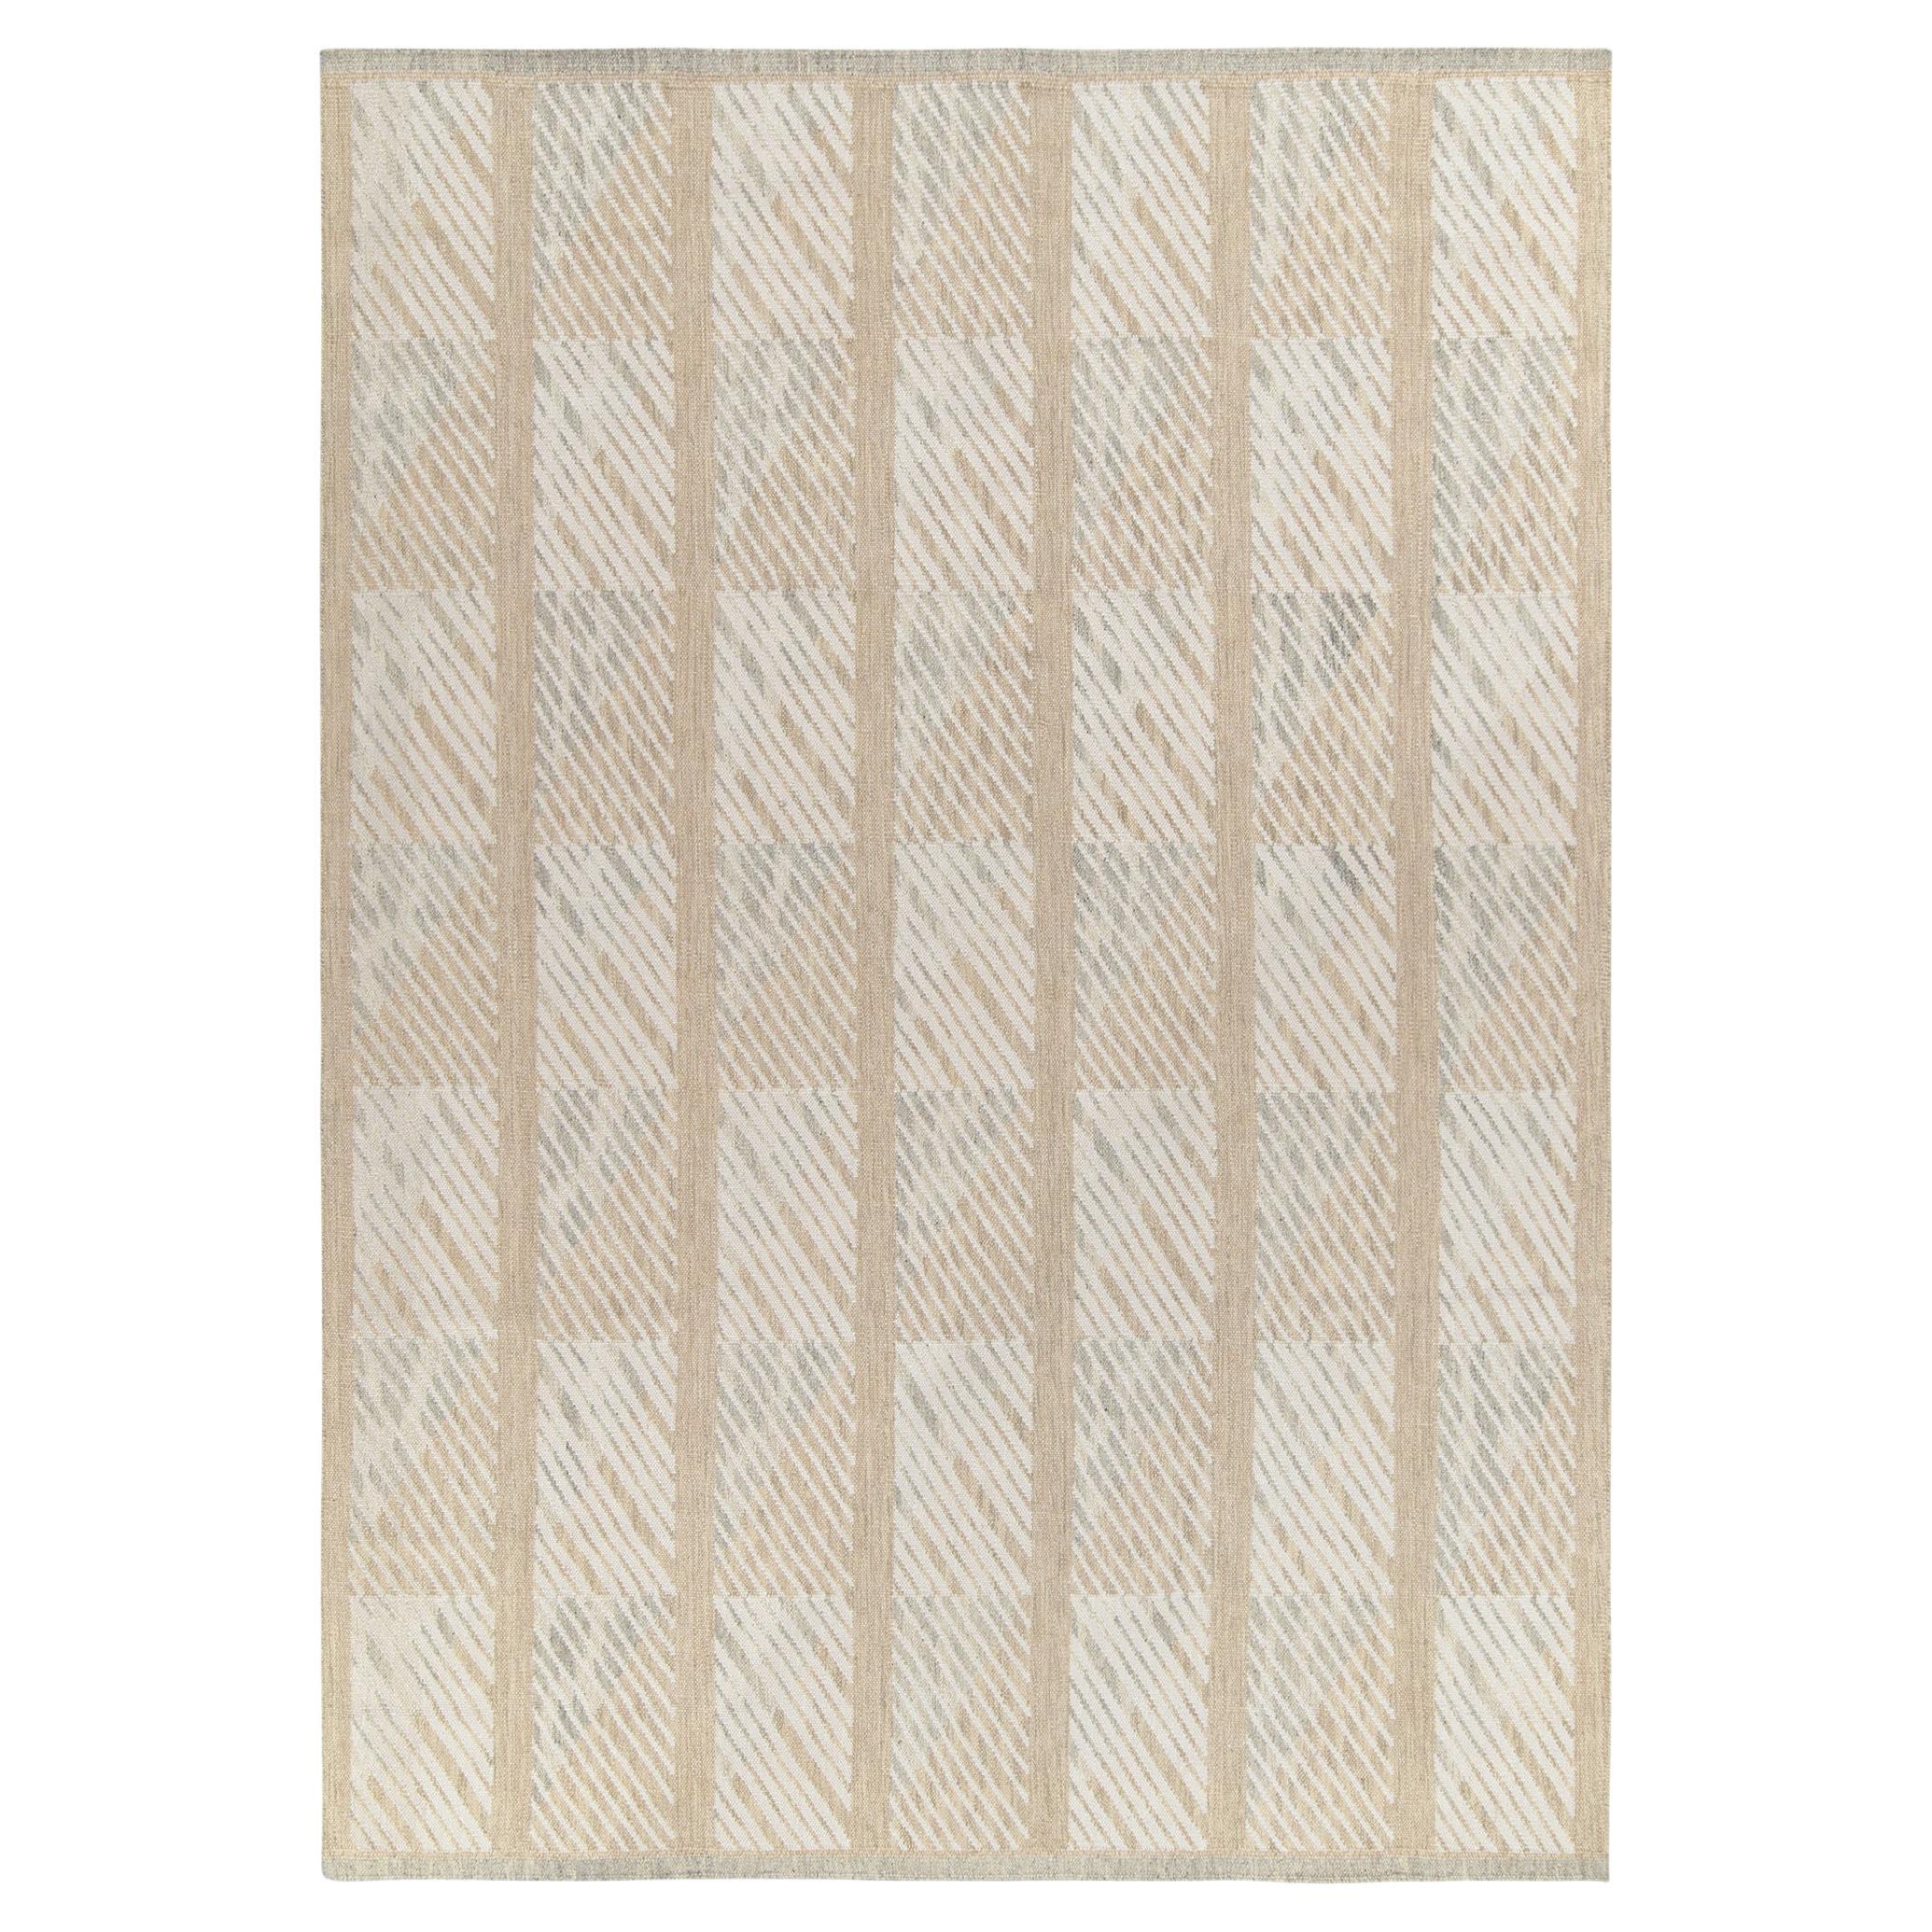 Teppich & Kelim-Teppich im skandinavischen Stil in Weiß, Beige mit geometrischem Muster